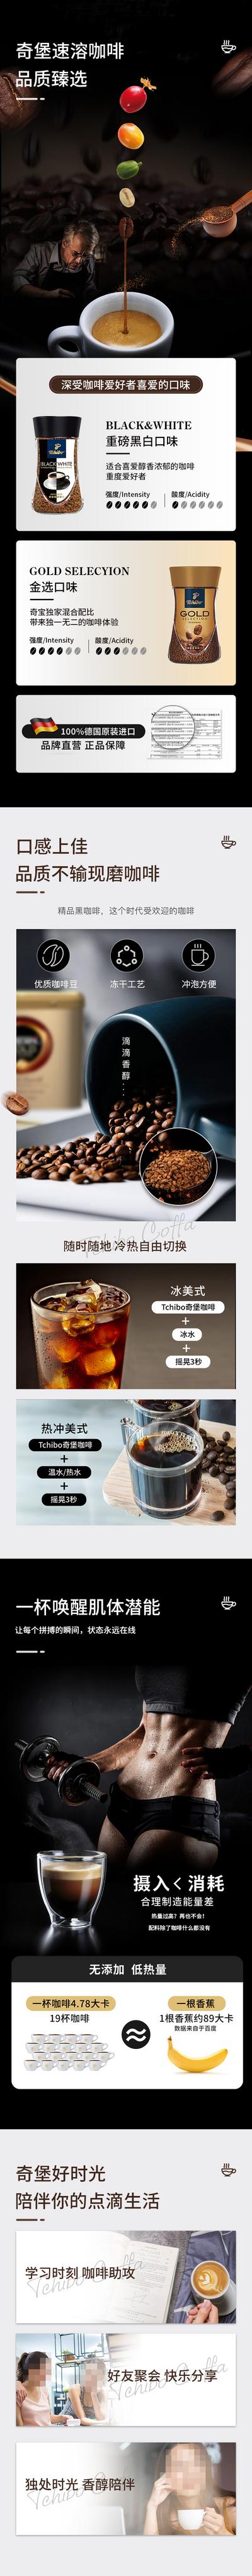 南门网 广告 海报 电商 咖啡 长图 美食 质感 黑金 高端 天猫